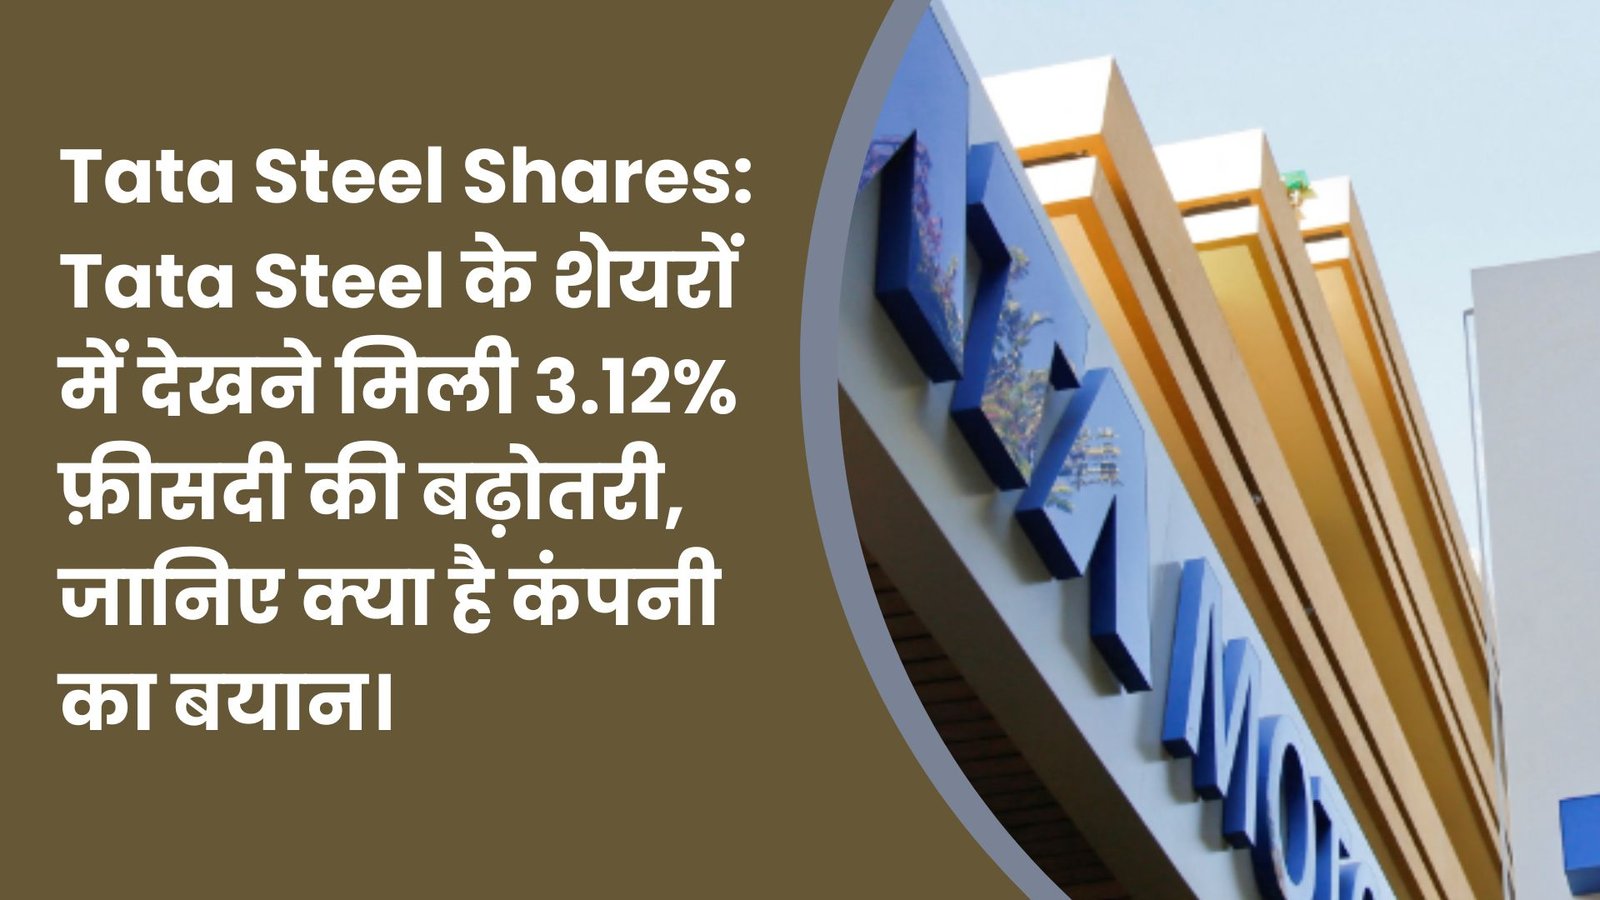 Tata Motors: Tata Motors का बड़ा फैसला, अब DVR शेयर्स बदलेंगे साधारण शेयर्स में।